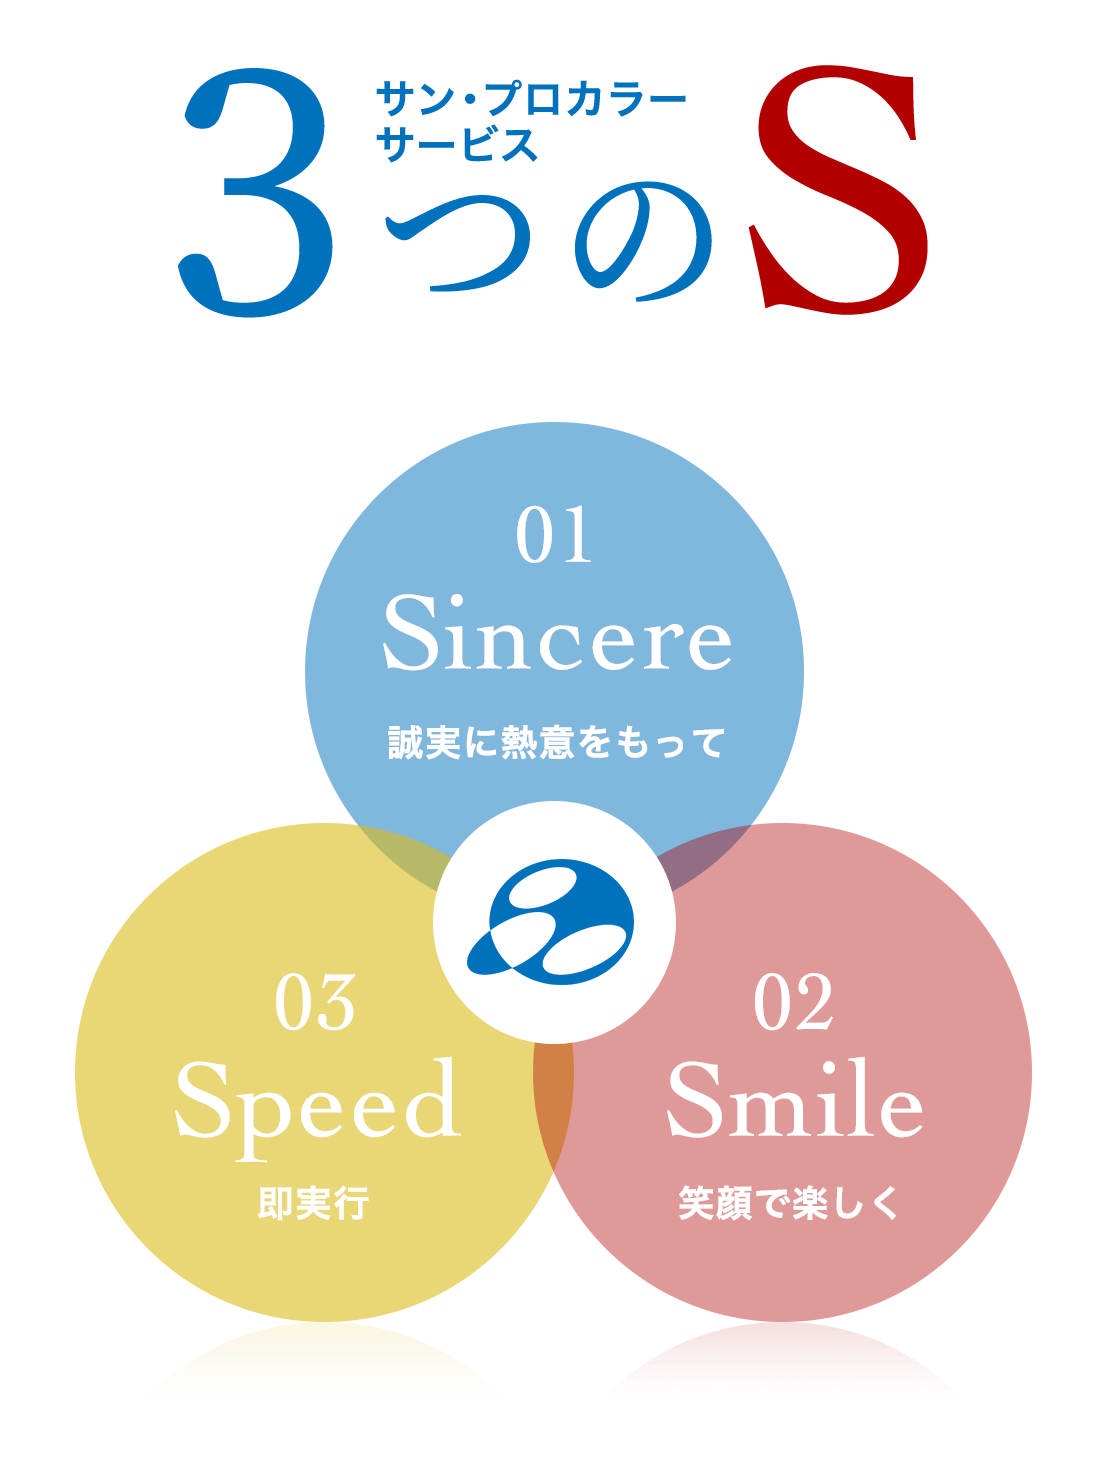 サン・プロカラーサービス ３つのS 「Sincere-誠実に熱意をもって-」「Smile-笑顔で楽しく-」「Speed-即実行-」